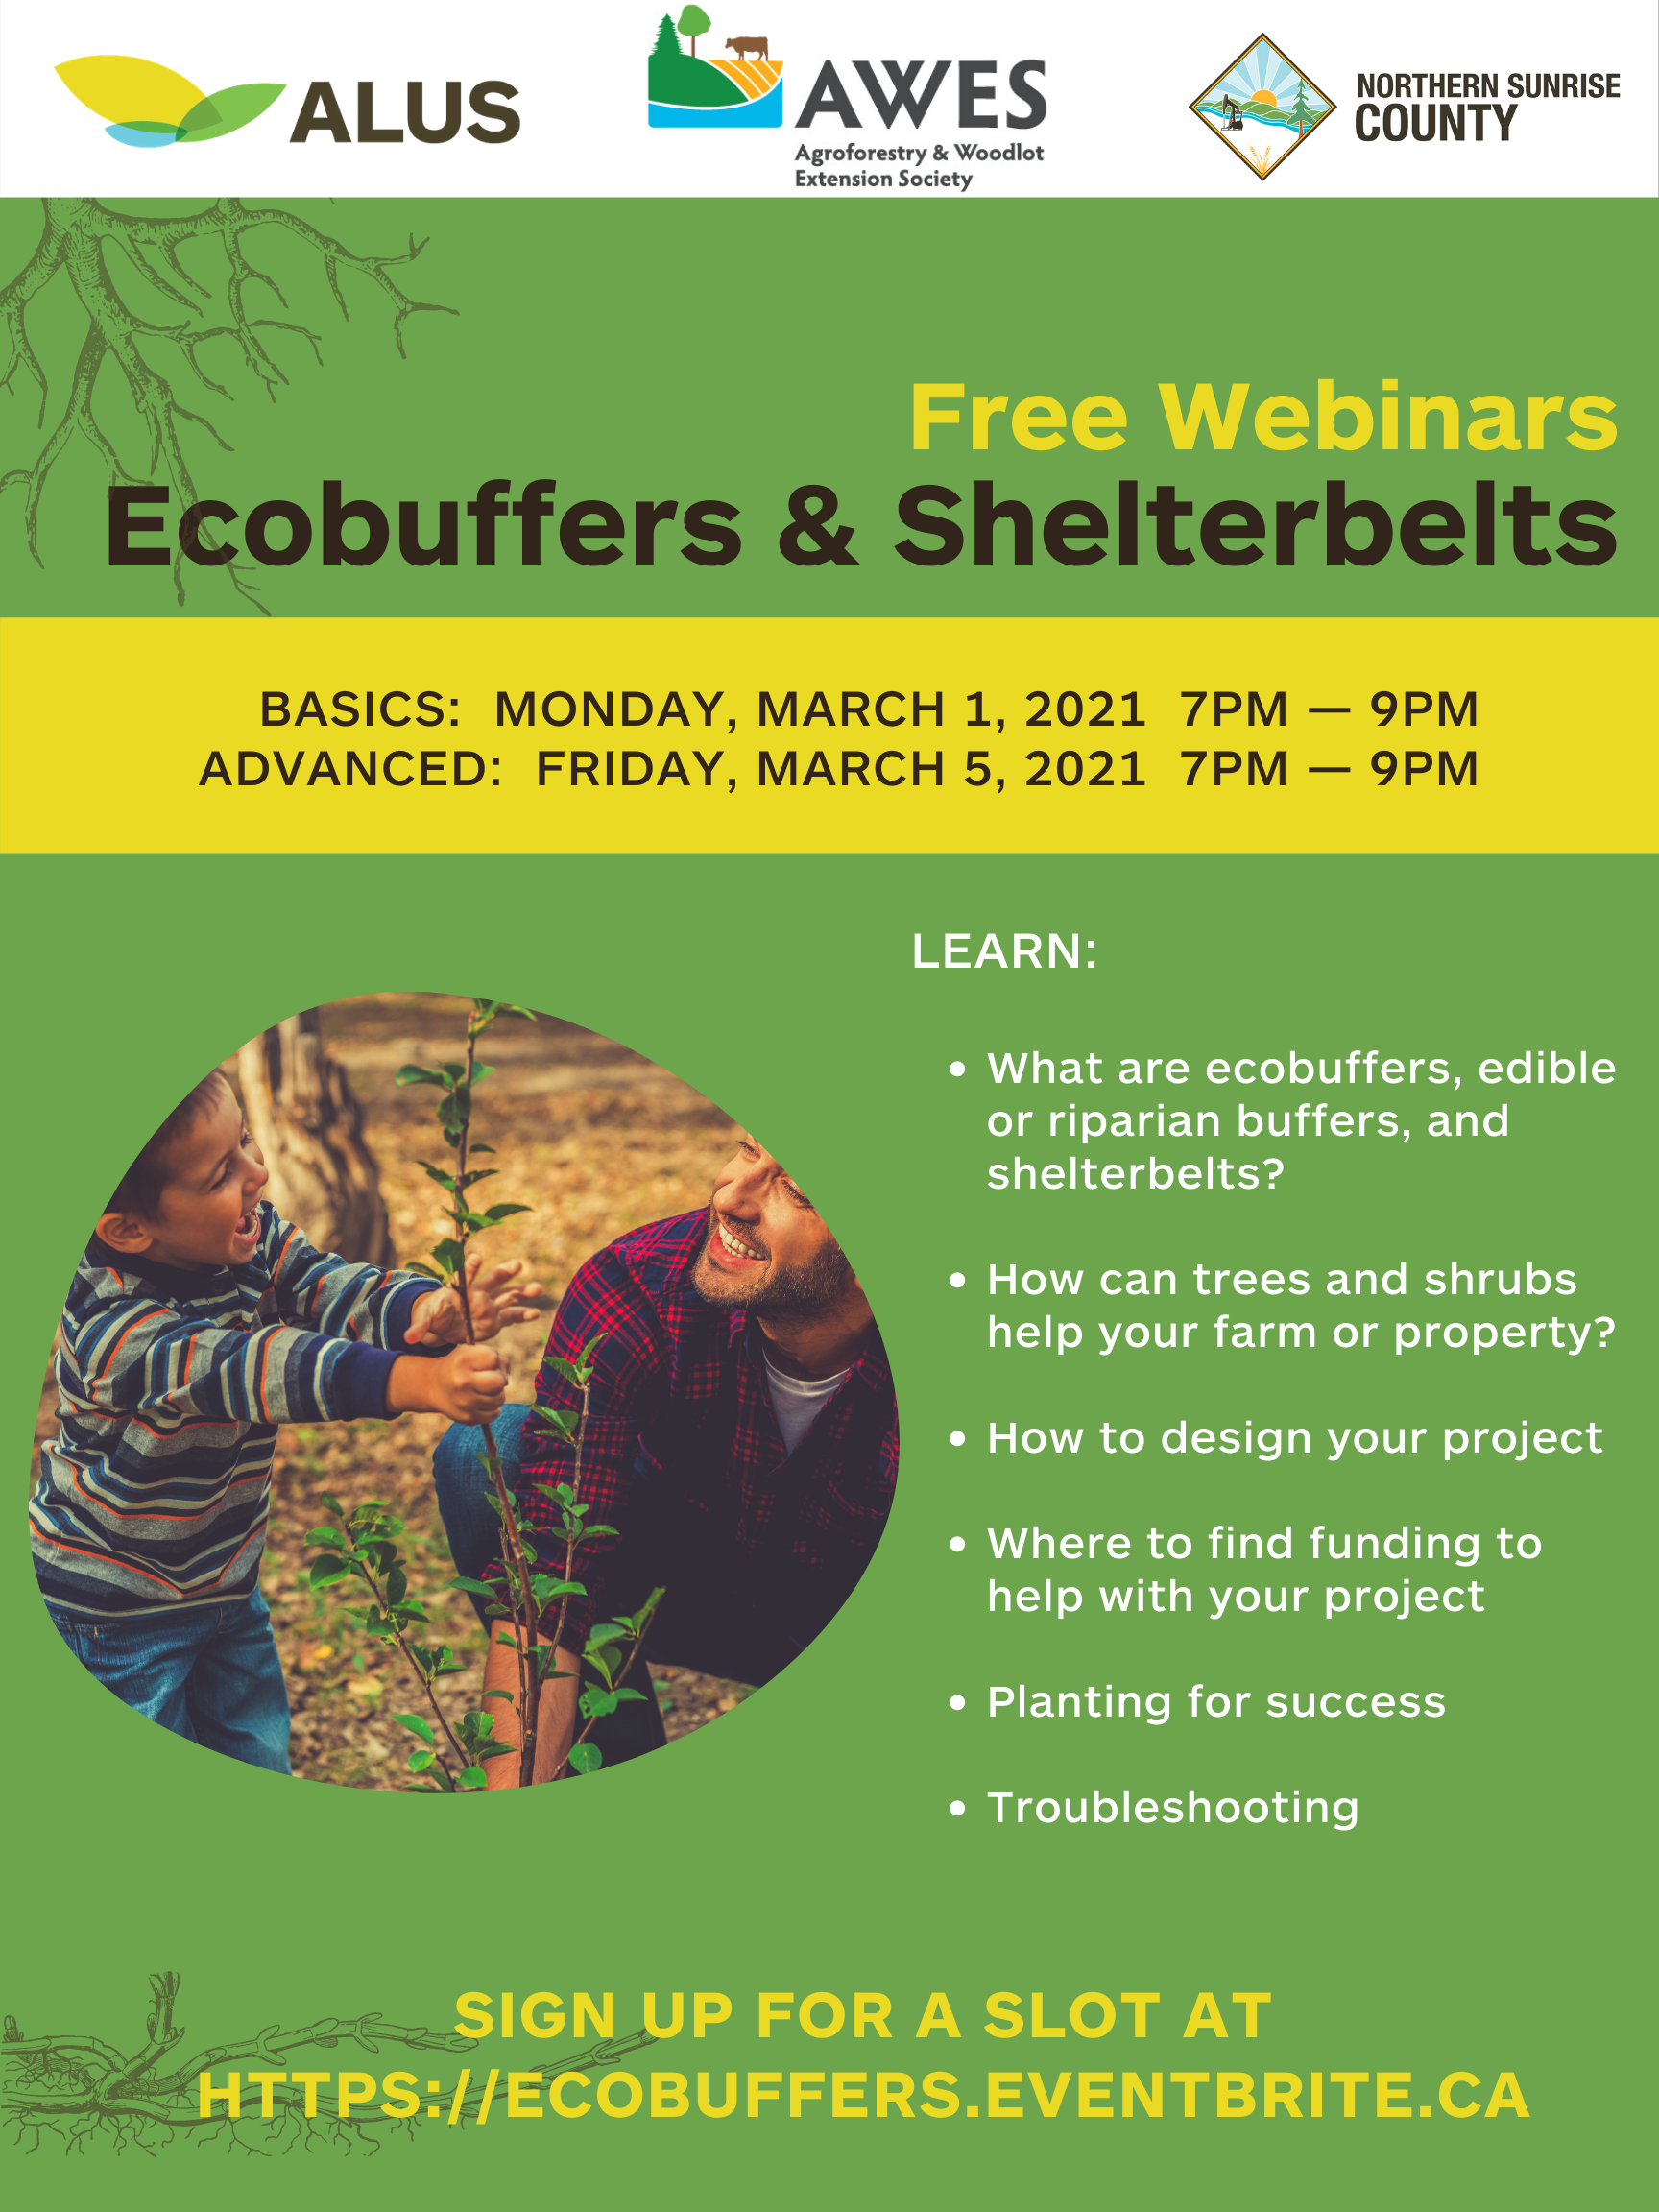 Free Webinar on Eco-buffers & Shelterbelts